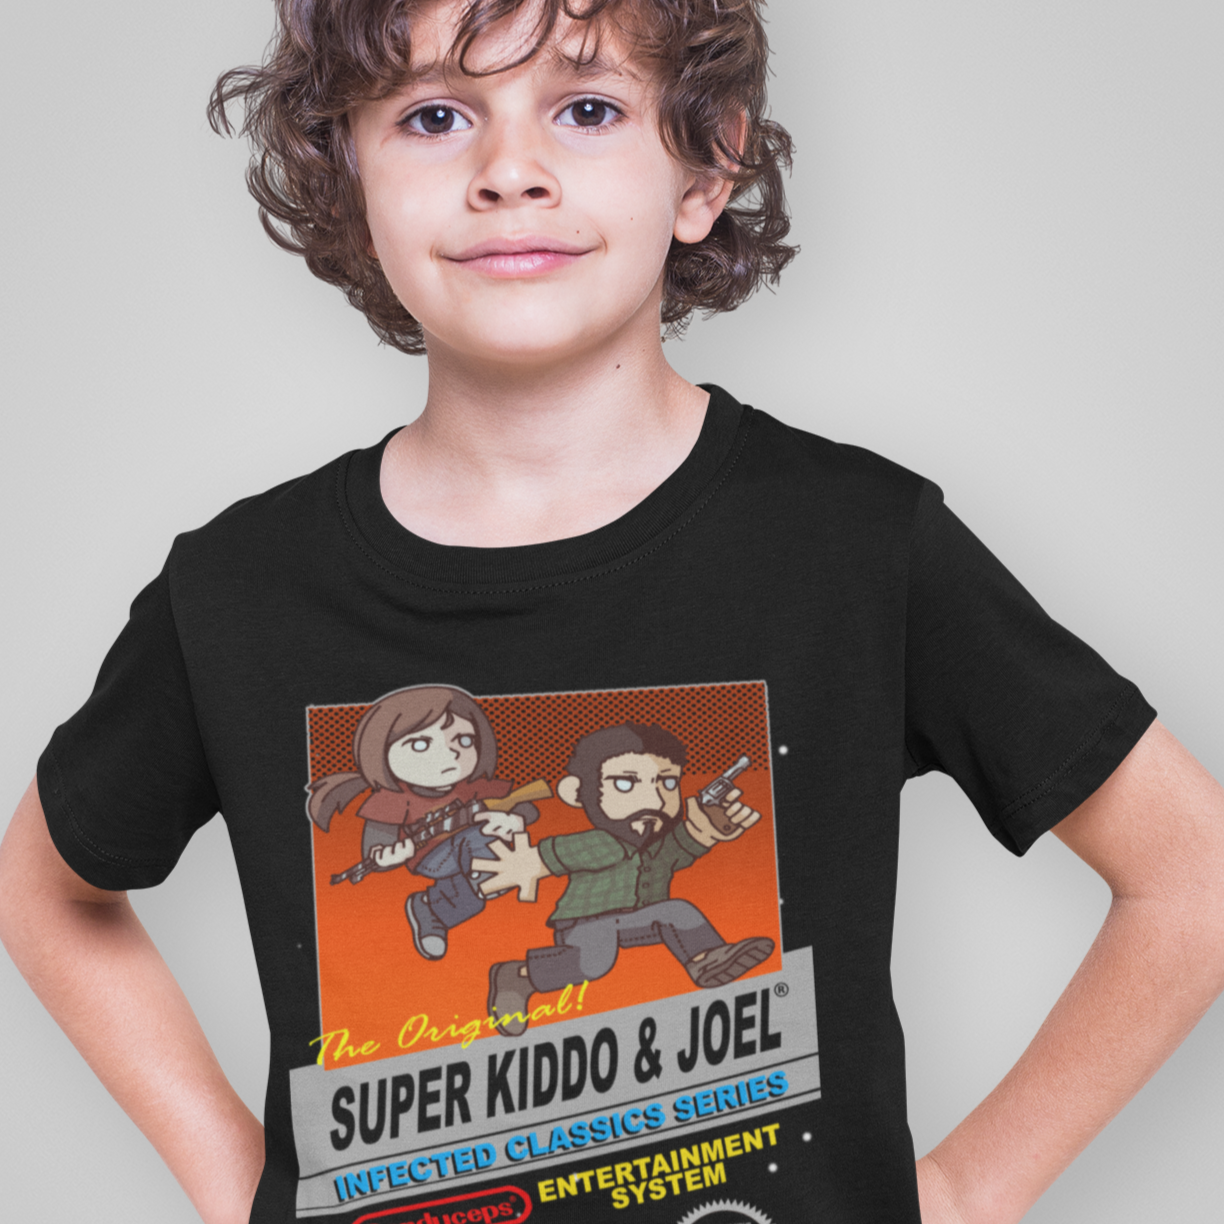 Kids' Tee - Super Kido & Joel